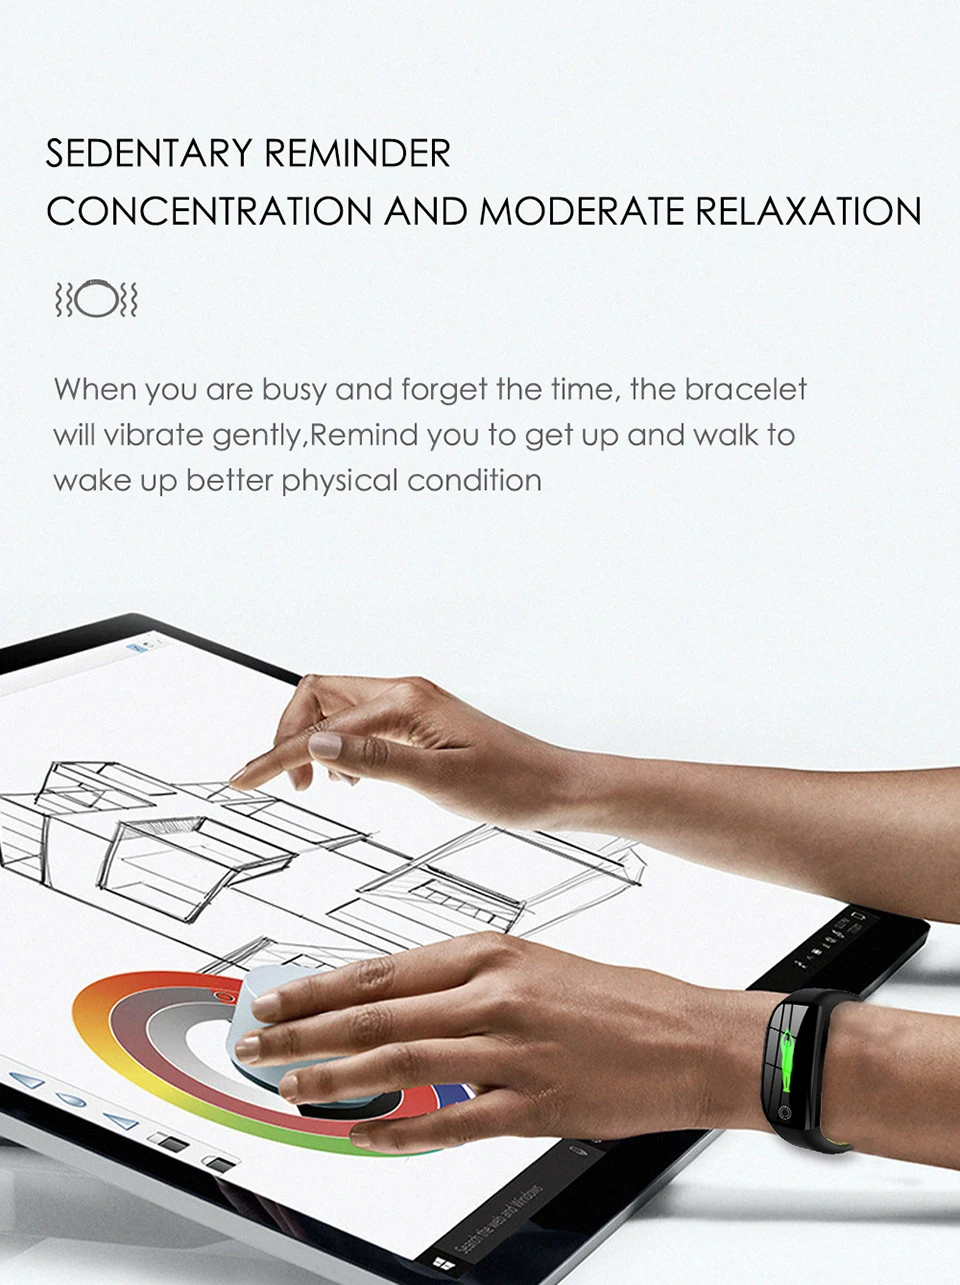 Фитнес-браслет, трекер активности, пульсометр, монитор артериального давления, спортивный смарт-браслет, часы для Android Xiao mi phone, PK mi Band 4